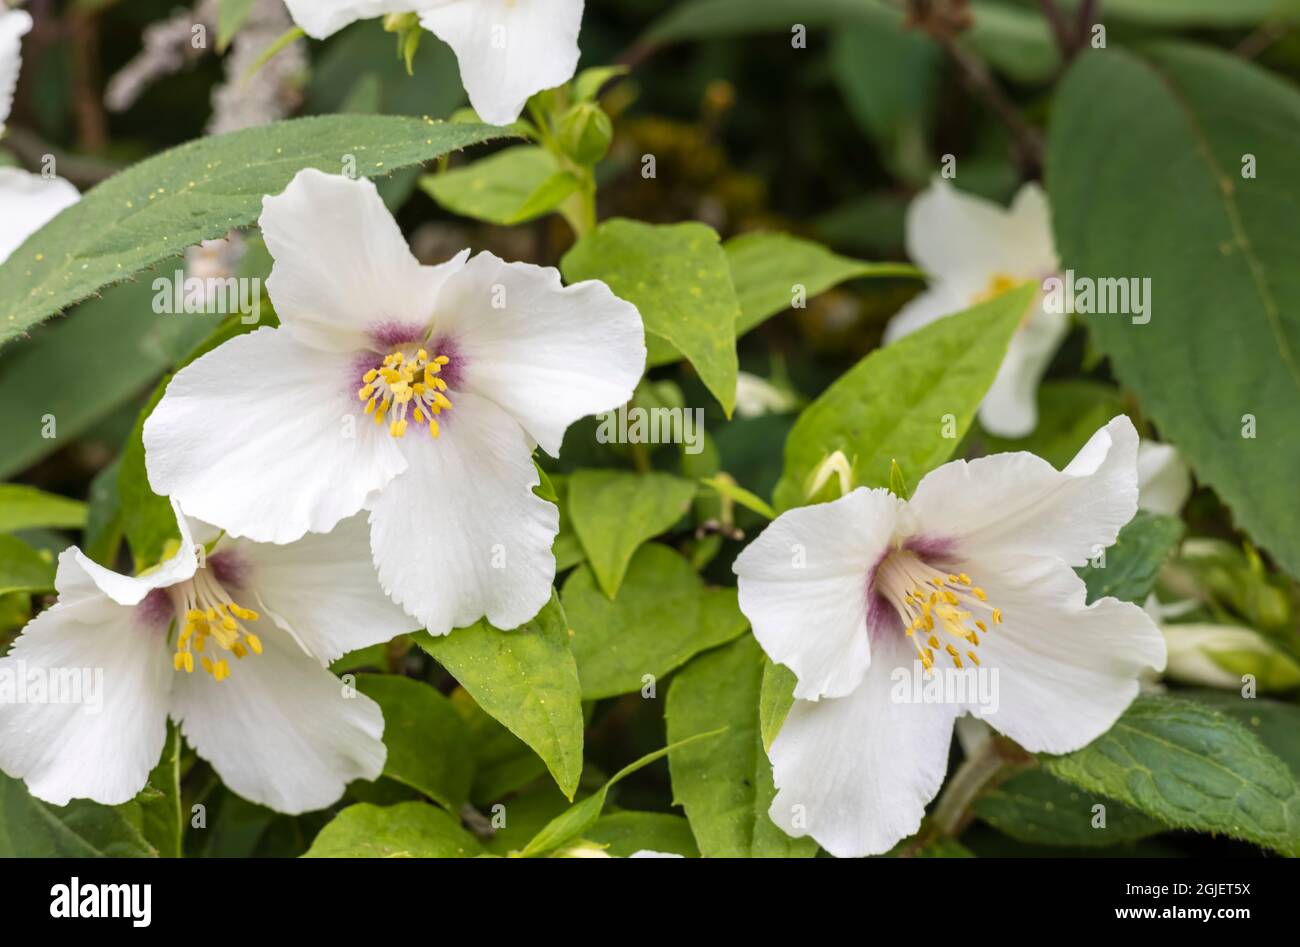 White, Intoxicatingly fragrant flowers of Philadelphus Lemoinei - Mock Orange Blossom in a garden. Stock Photo